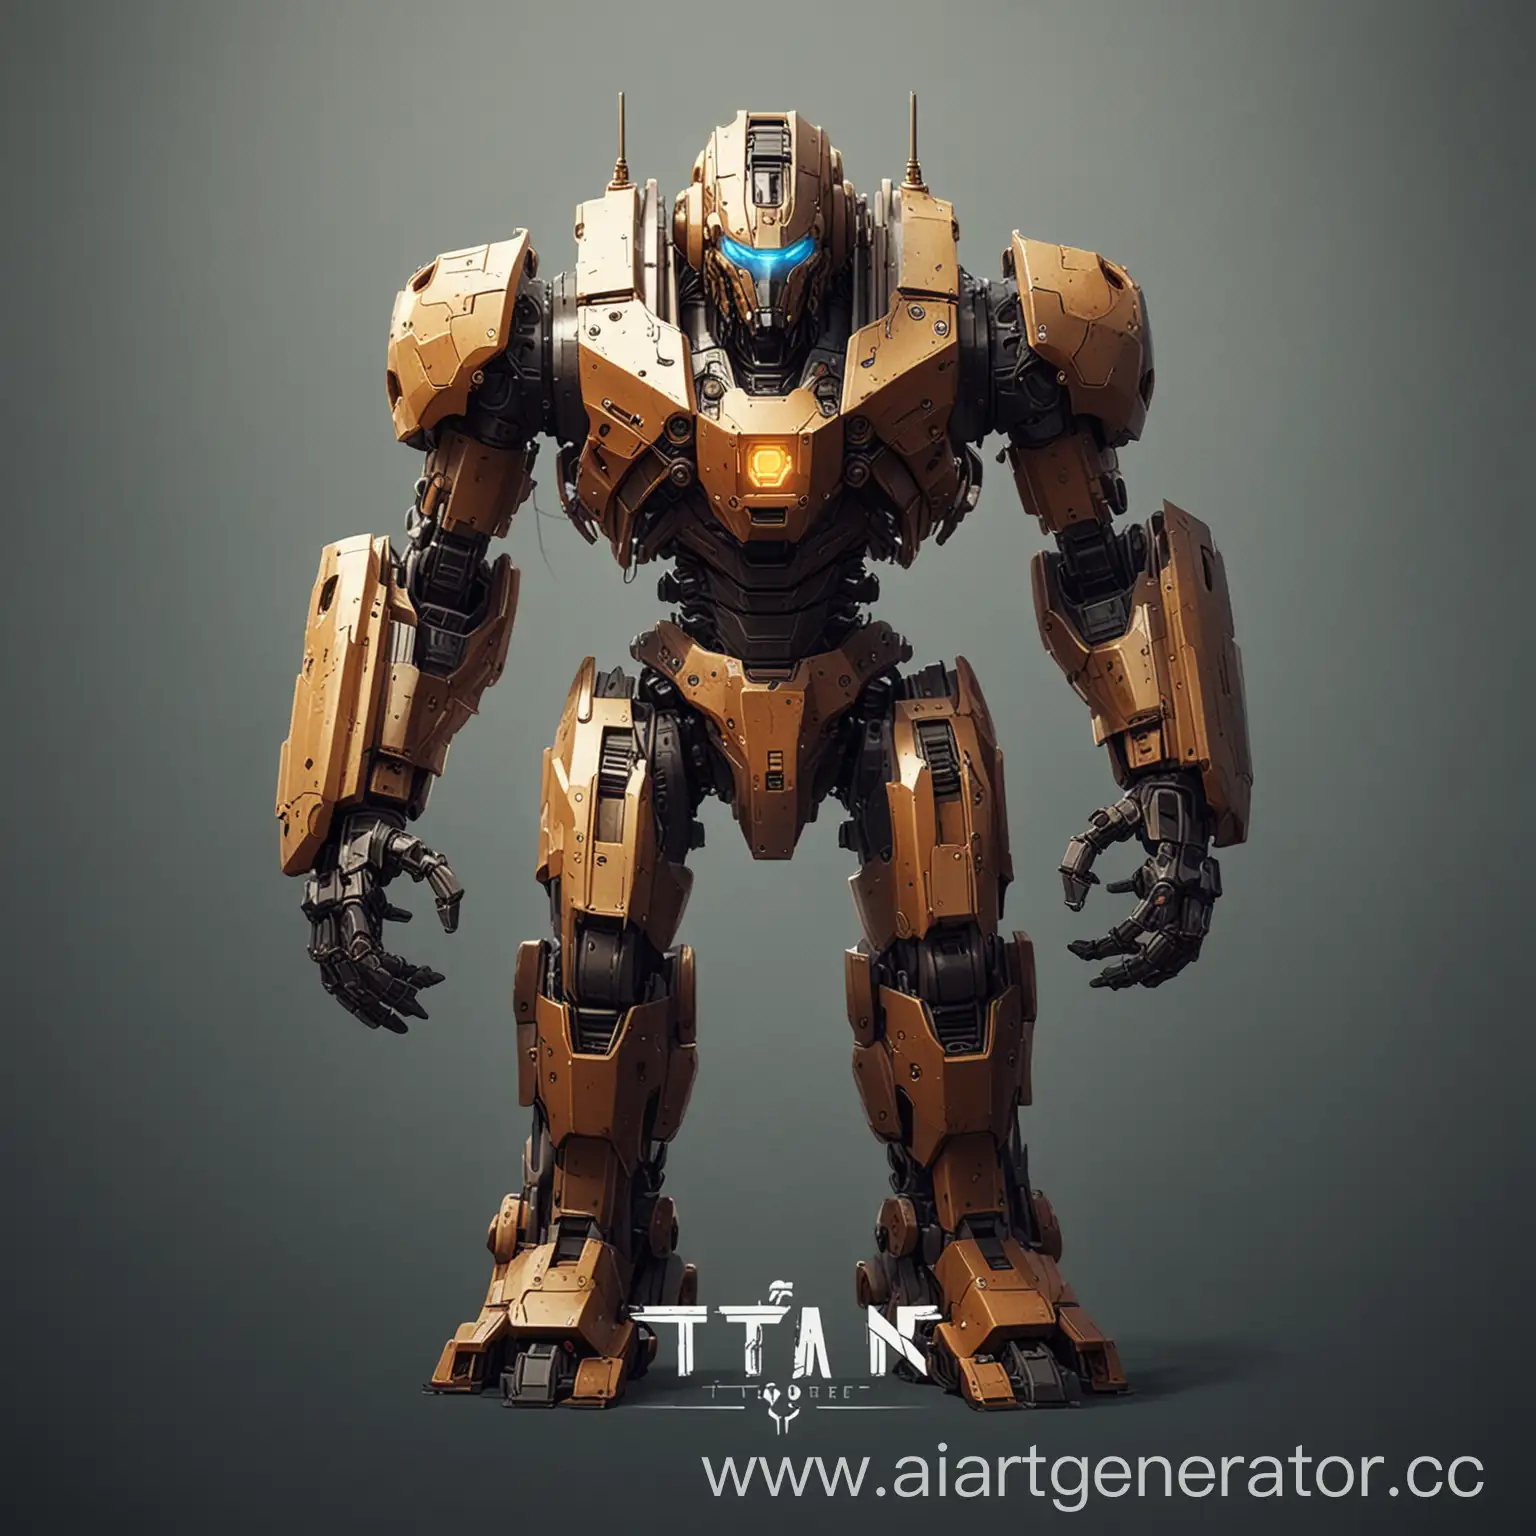 нарисуй логотип игры на котором будет изображён мех-робот в полный рост,минимализм,на заднем фоне будет надпись "Titan Core"